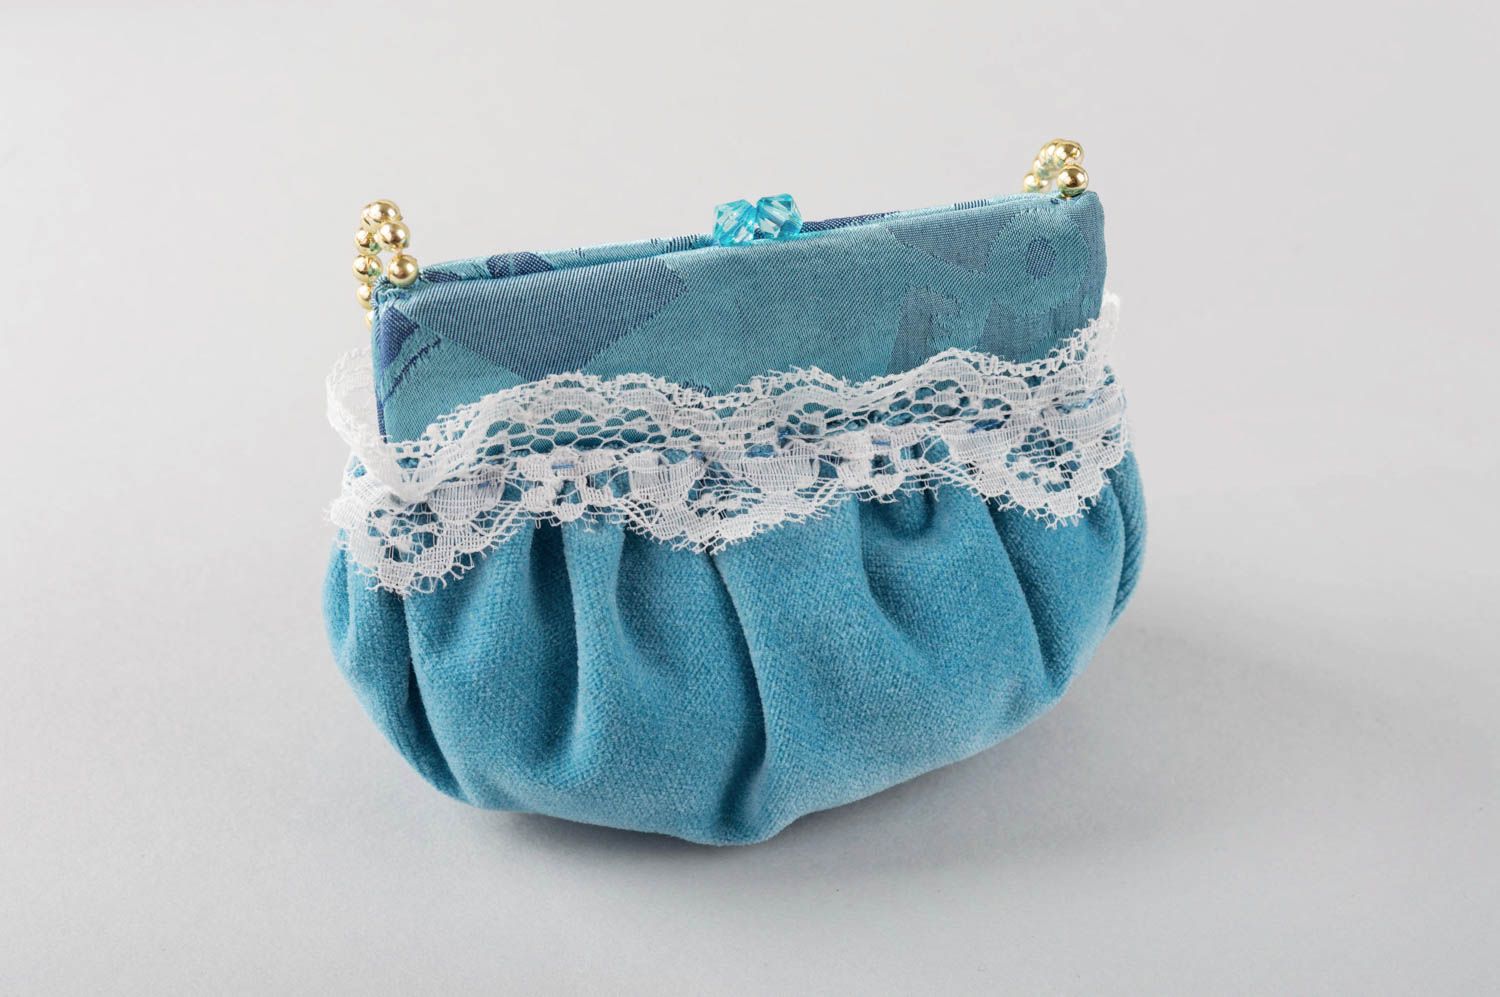 Интерьерная подвеска из ткани ручной работы оригинальная голубая симпатичная фото 3